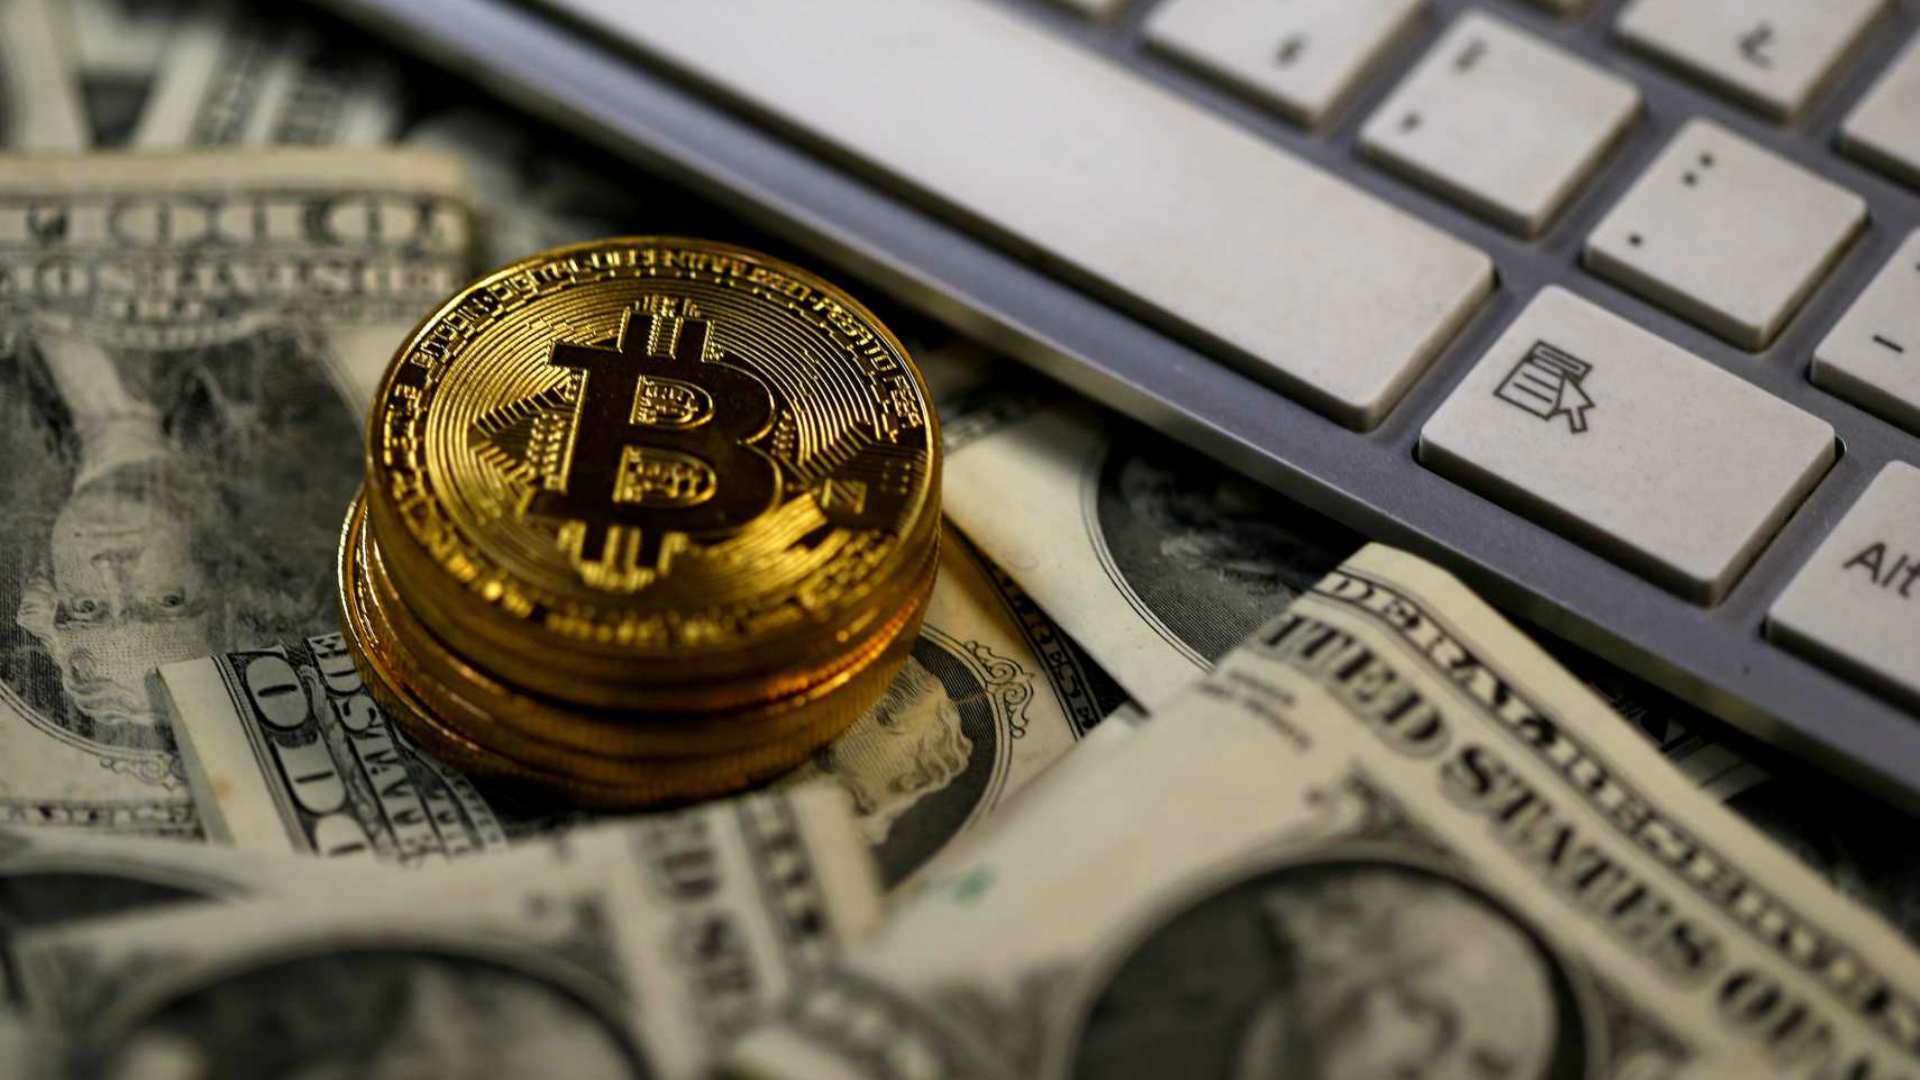 Liberan a un hombre secuestrado tras el pago de 1 millón de dólares en Bitcoin como rescate